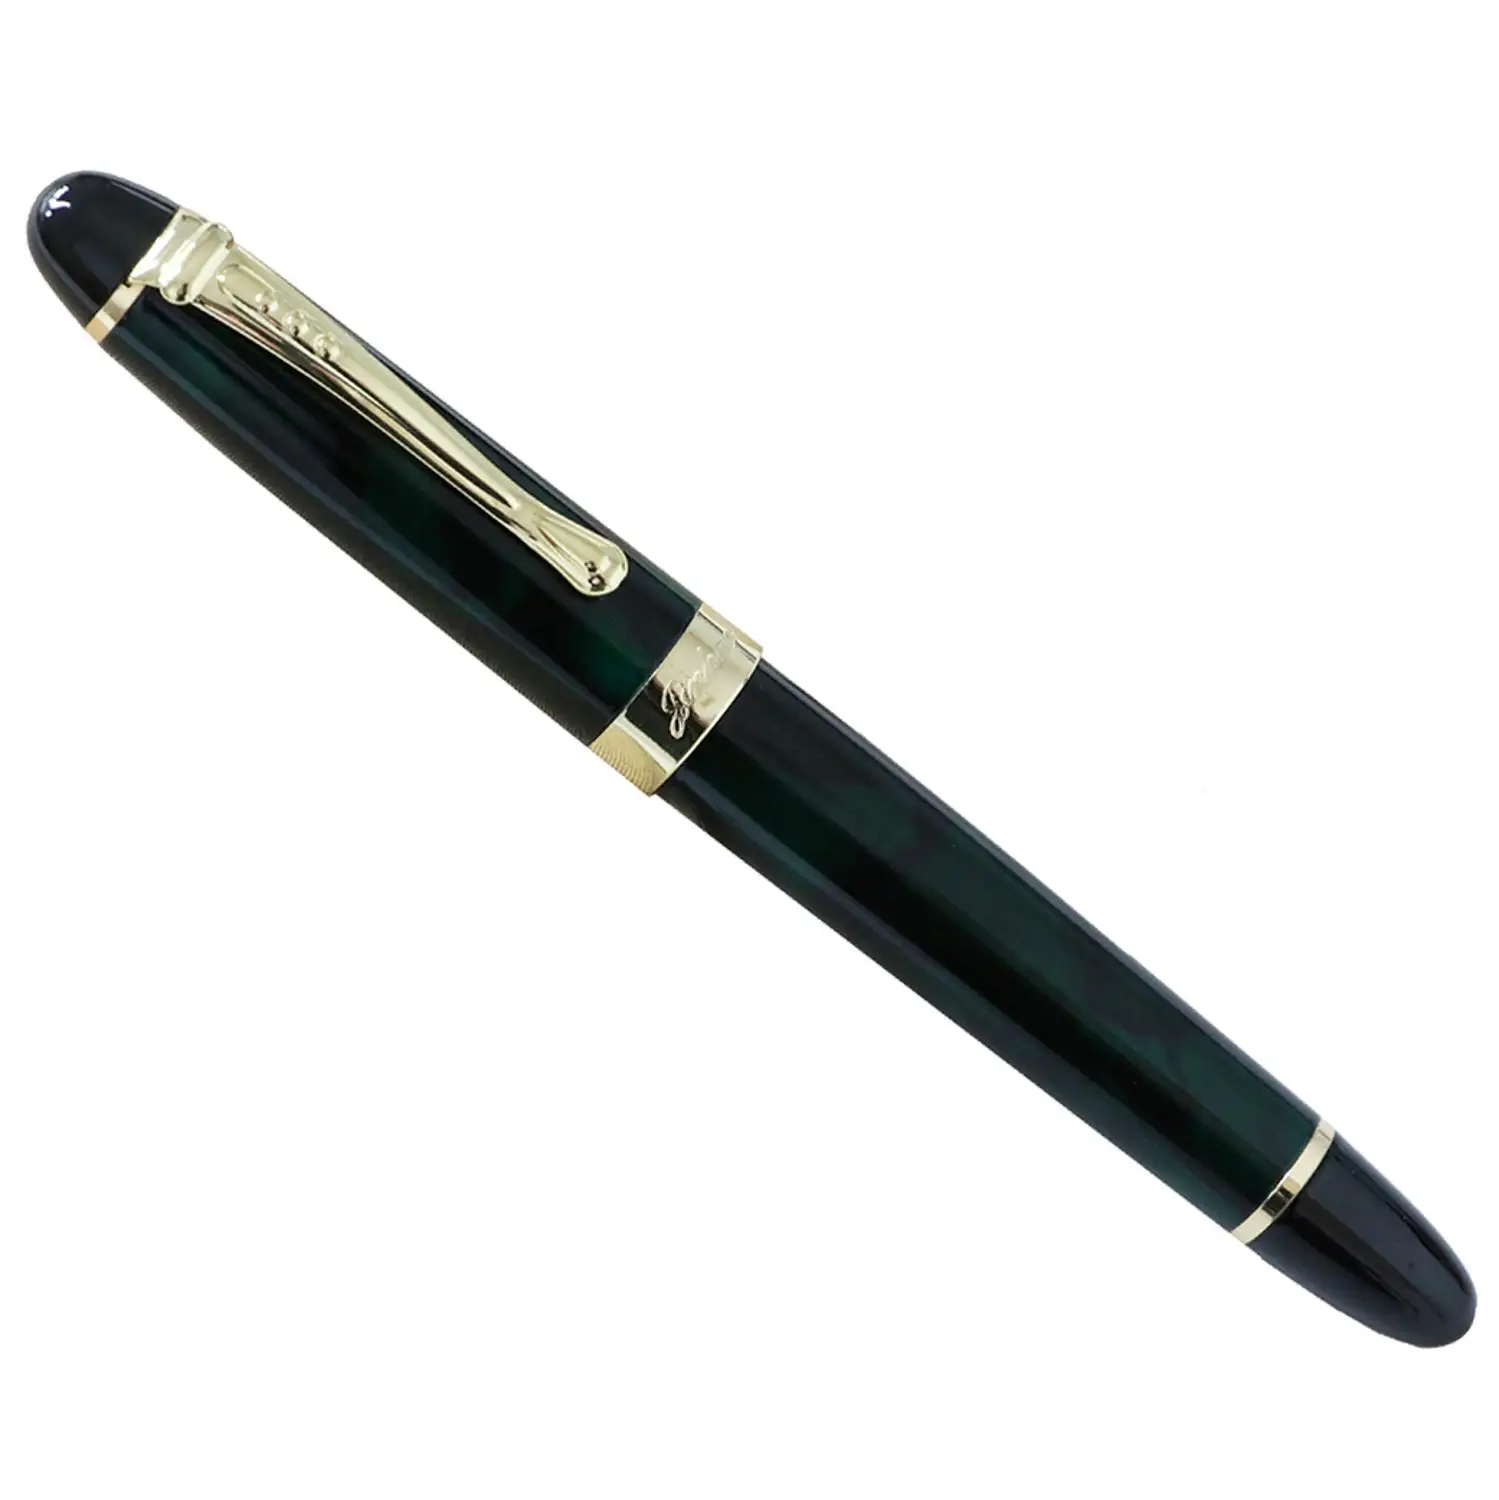 JINHAO 450 перьевая ручка 0.5MM or 1.0MM ручка чернильная перо для письма канцтовары ручки для школы - Цвет: Dark Green